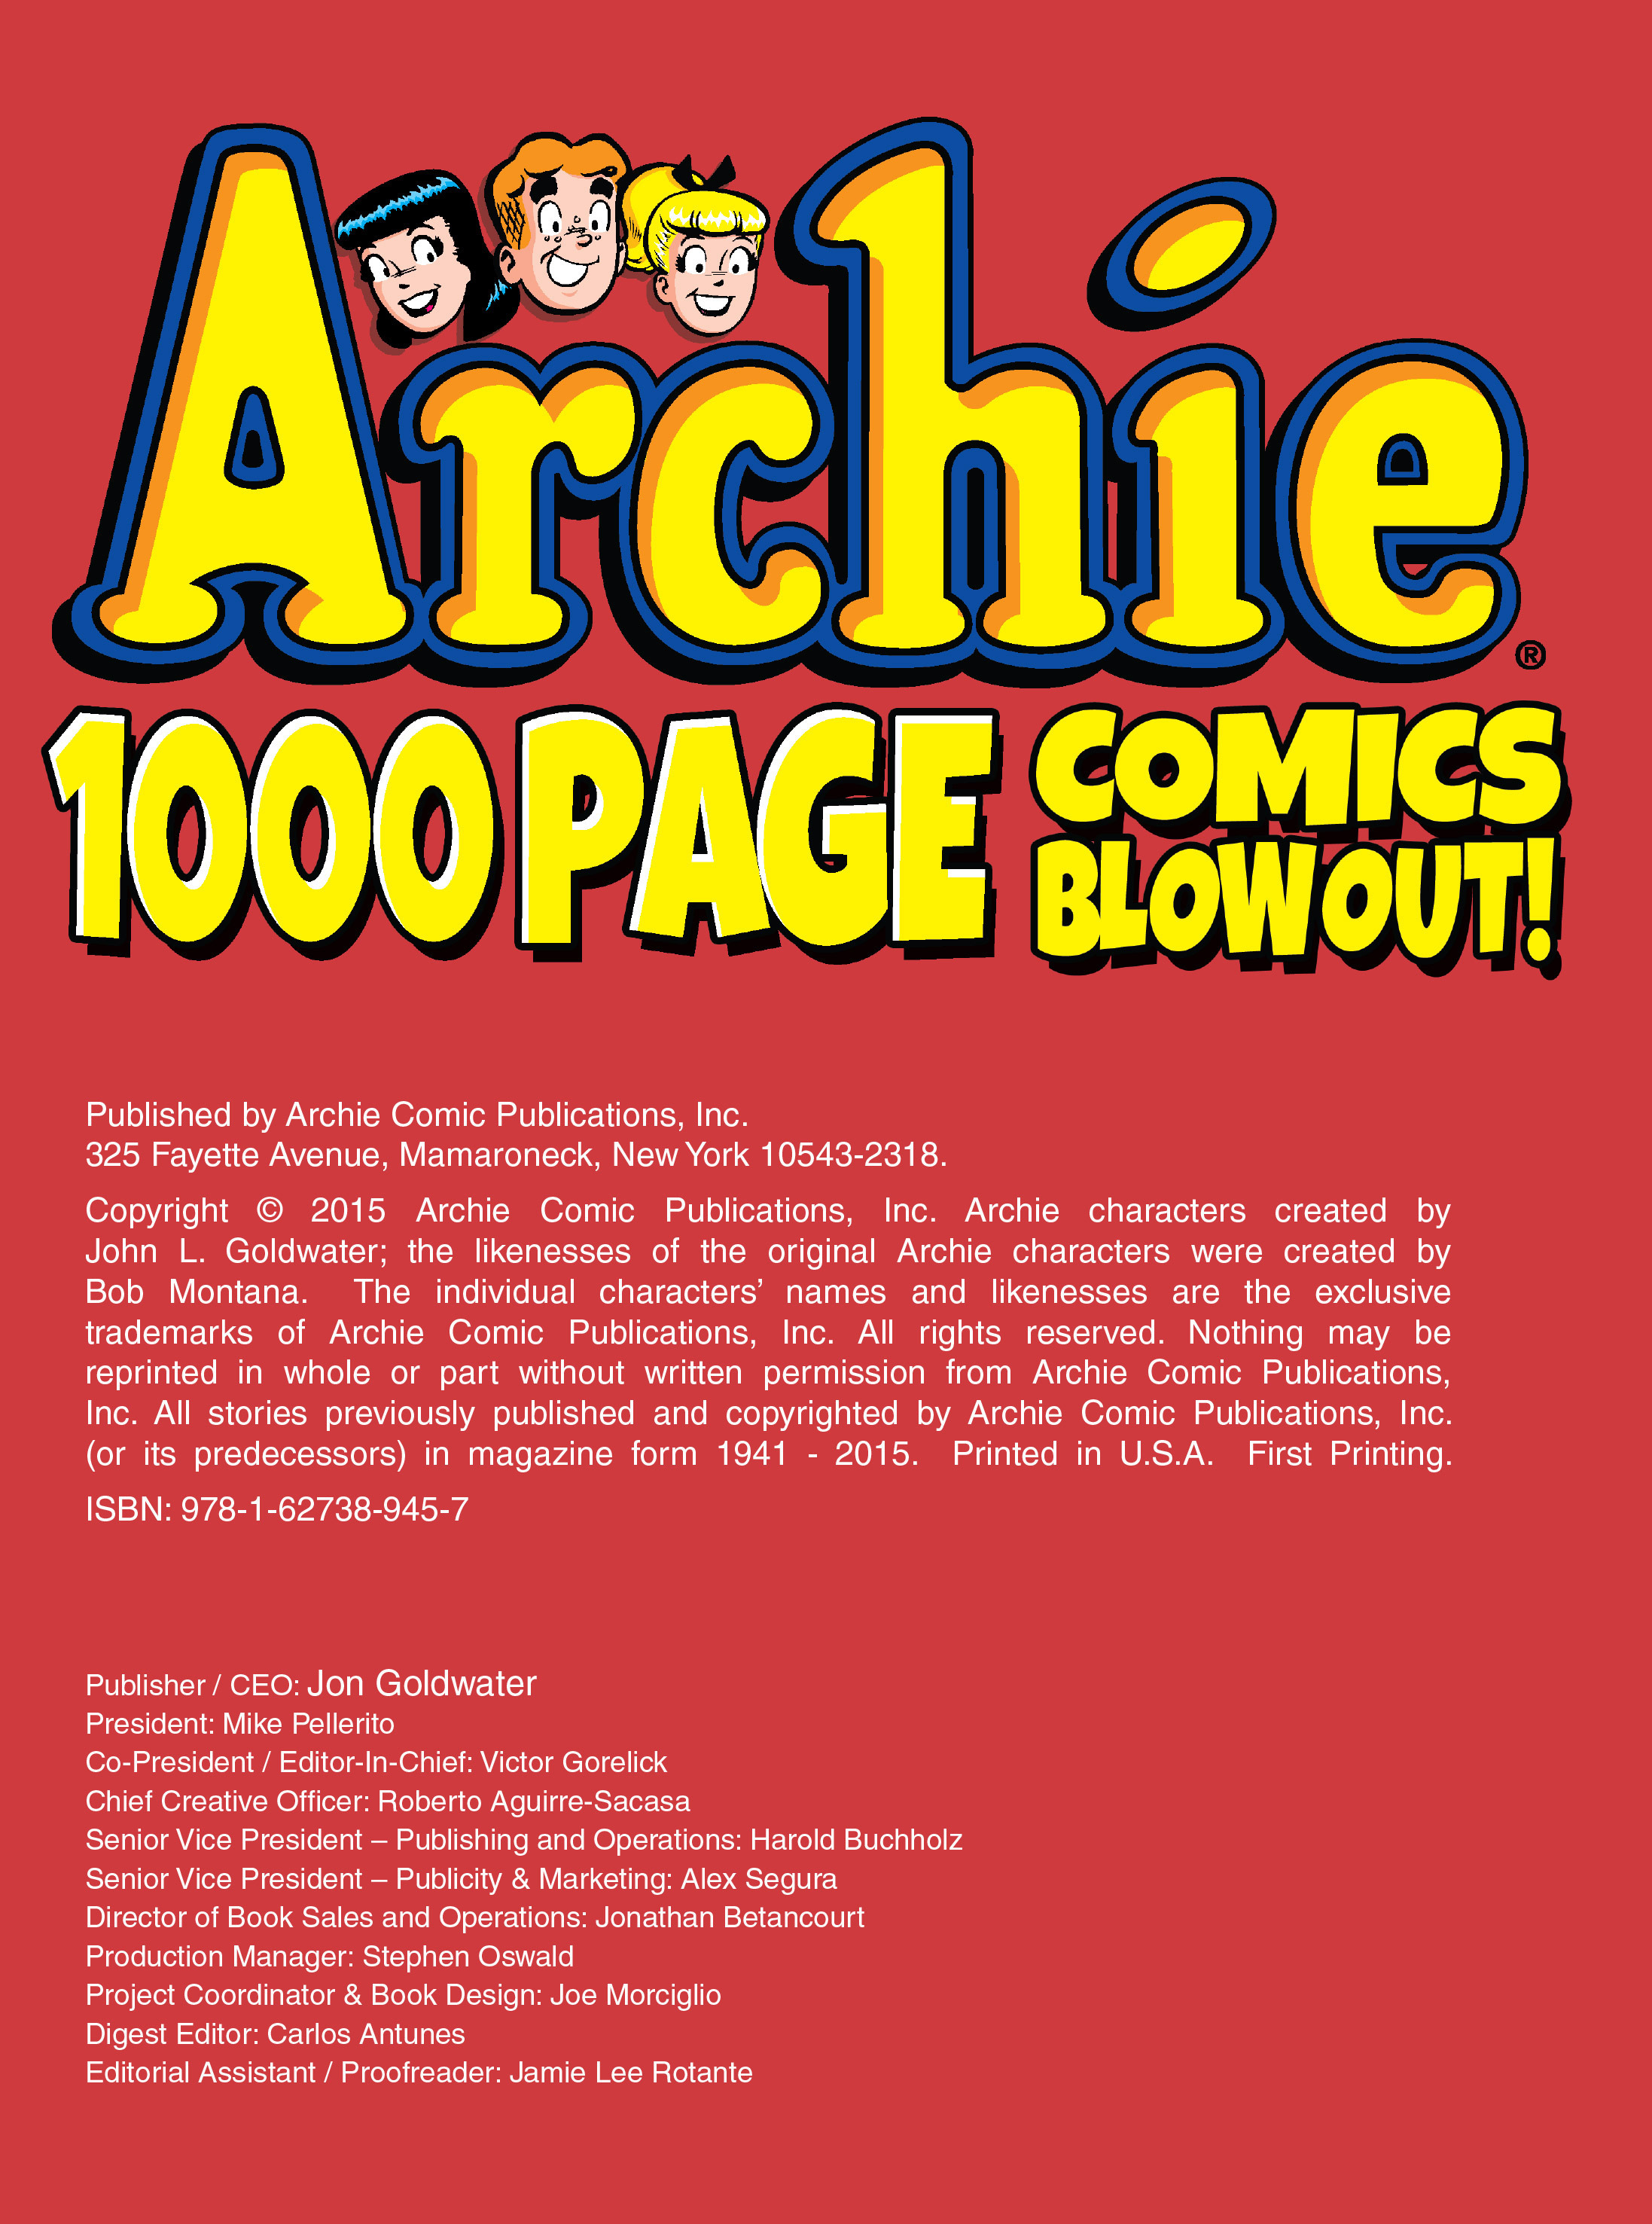 Archie 1000 Page Comics Blowout! TPB_(Part_1) Page 2